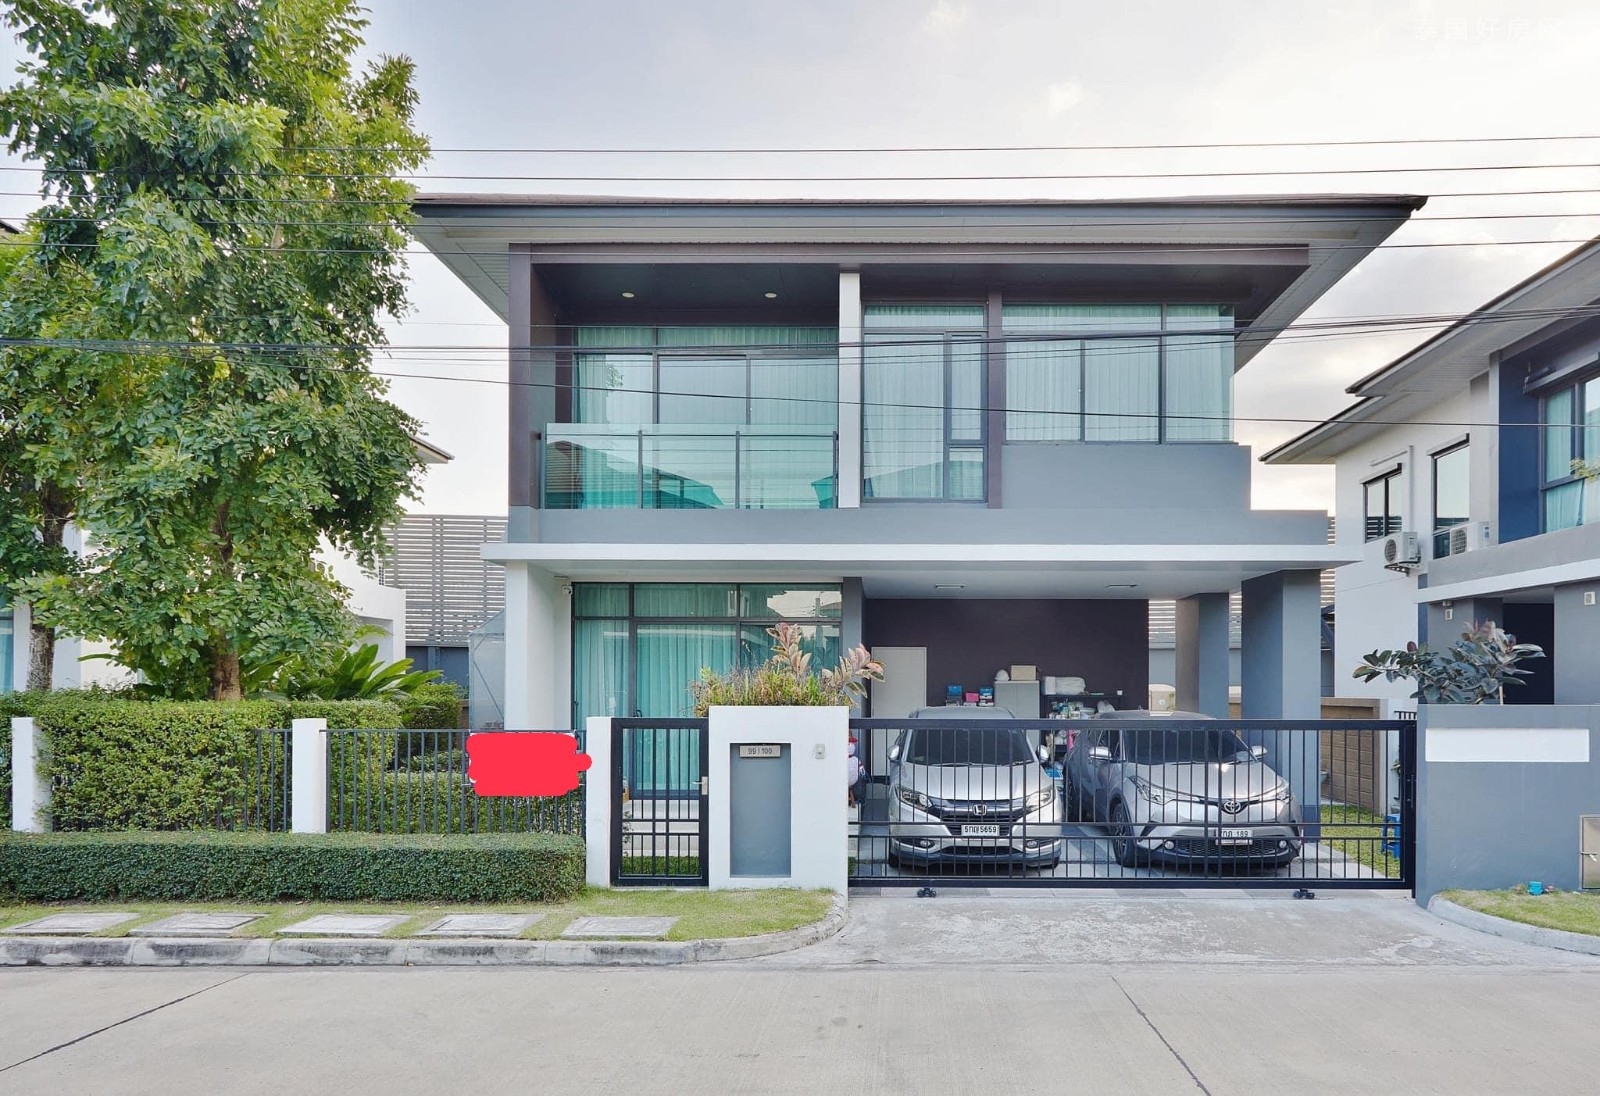 【推荐】Setthasiri Krungthep Kreetha独栋别墅出售 3卧165平米 售价990万泰铢